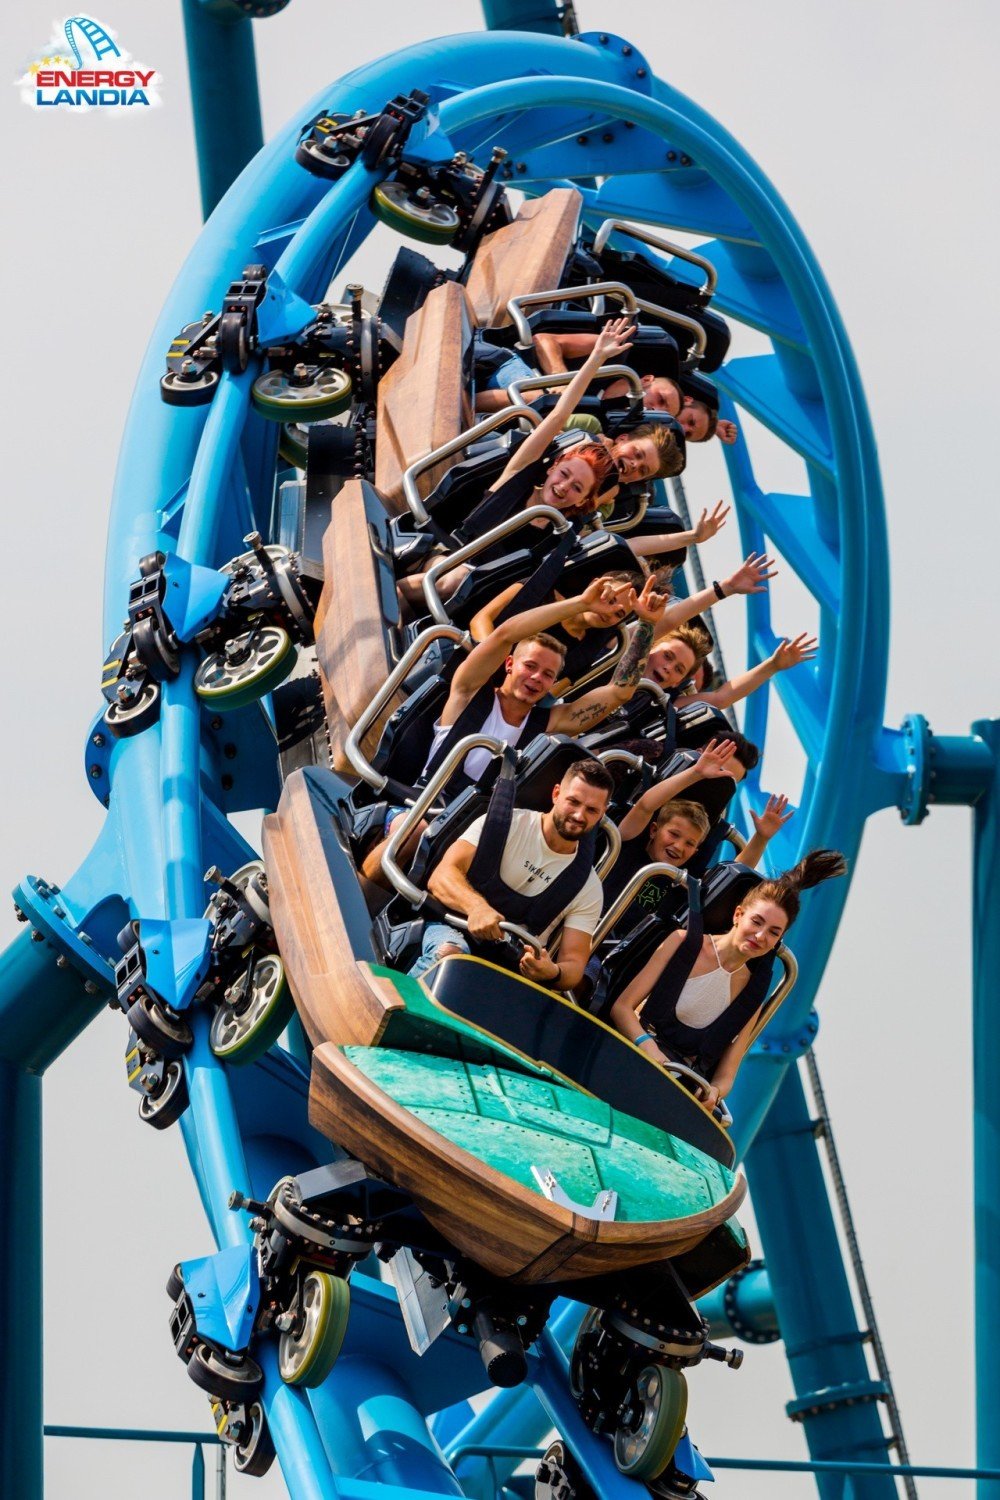 Najlepszy roller coaster w Europie znajduje się w Park Rozrywki  Energylandia w Zatorze. Nagroda dla Abyssus. To najlepsza nowość [ZDJĘCIA]  | Wadowice Nasze Miasto